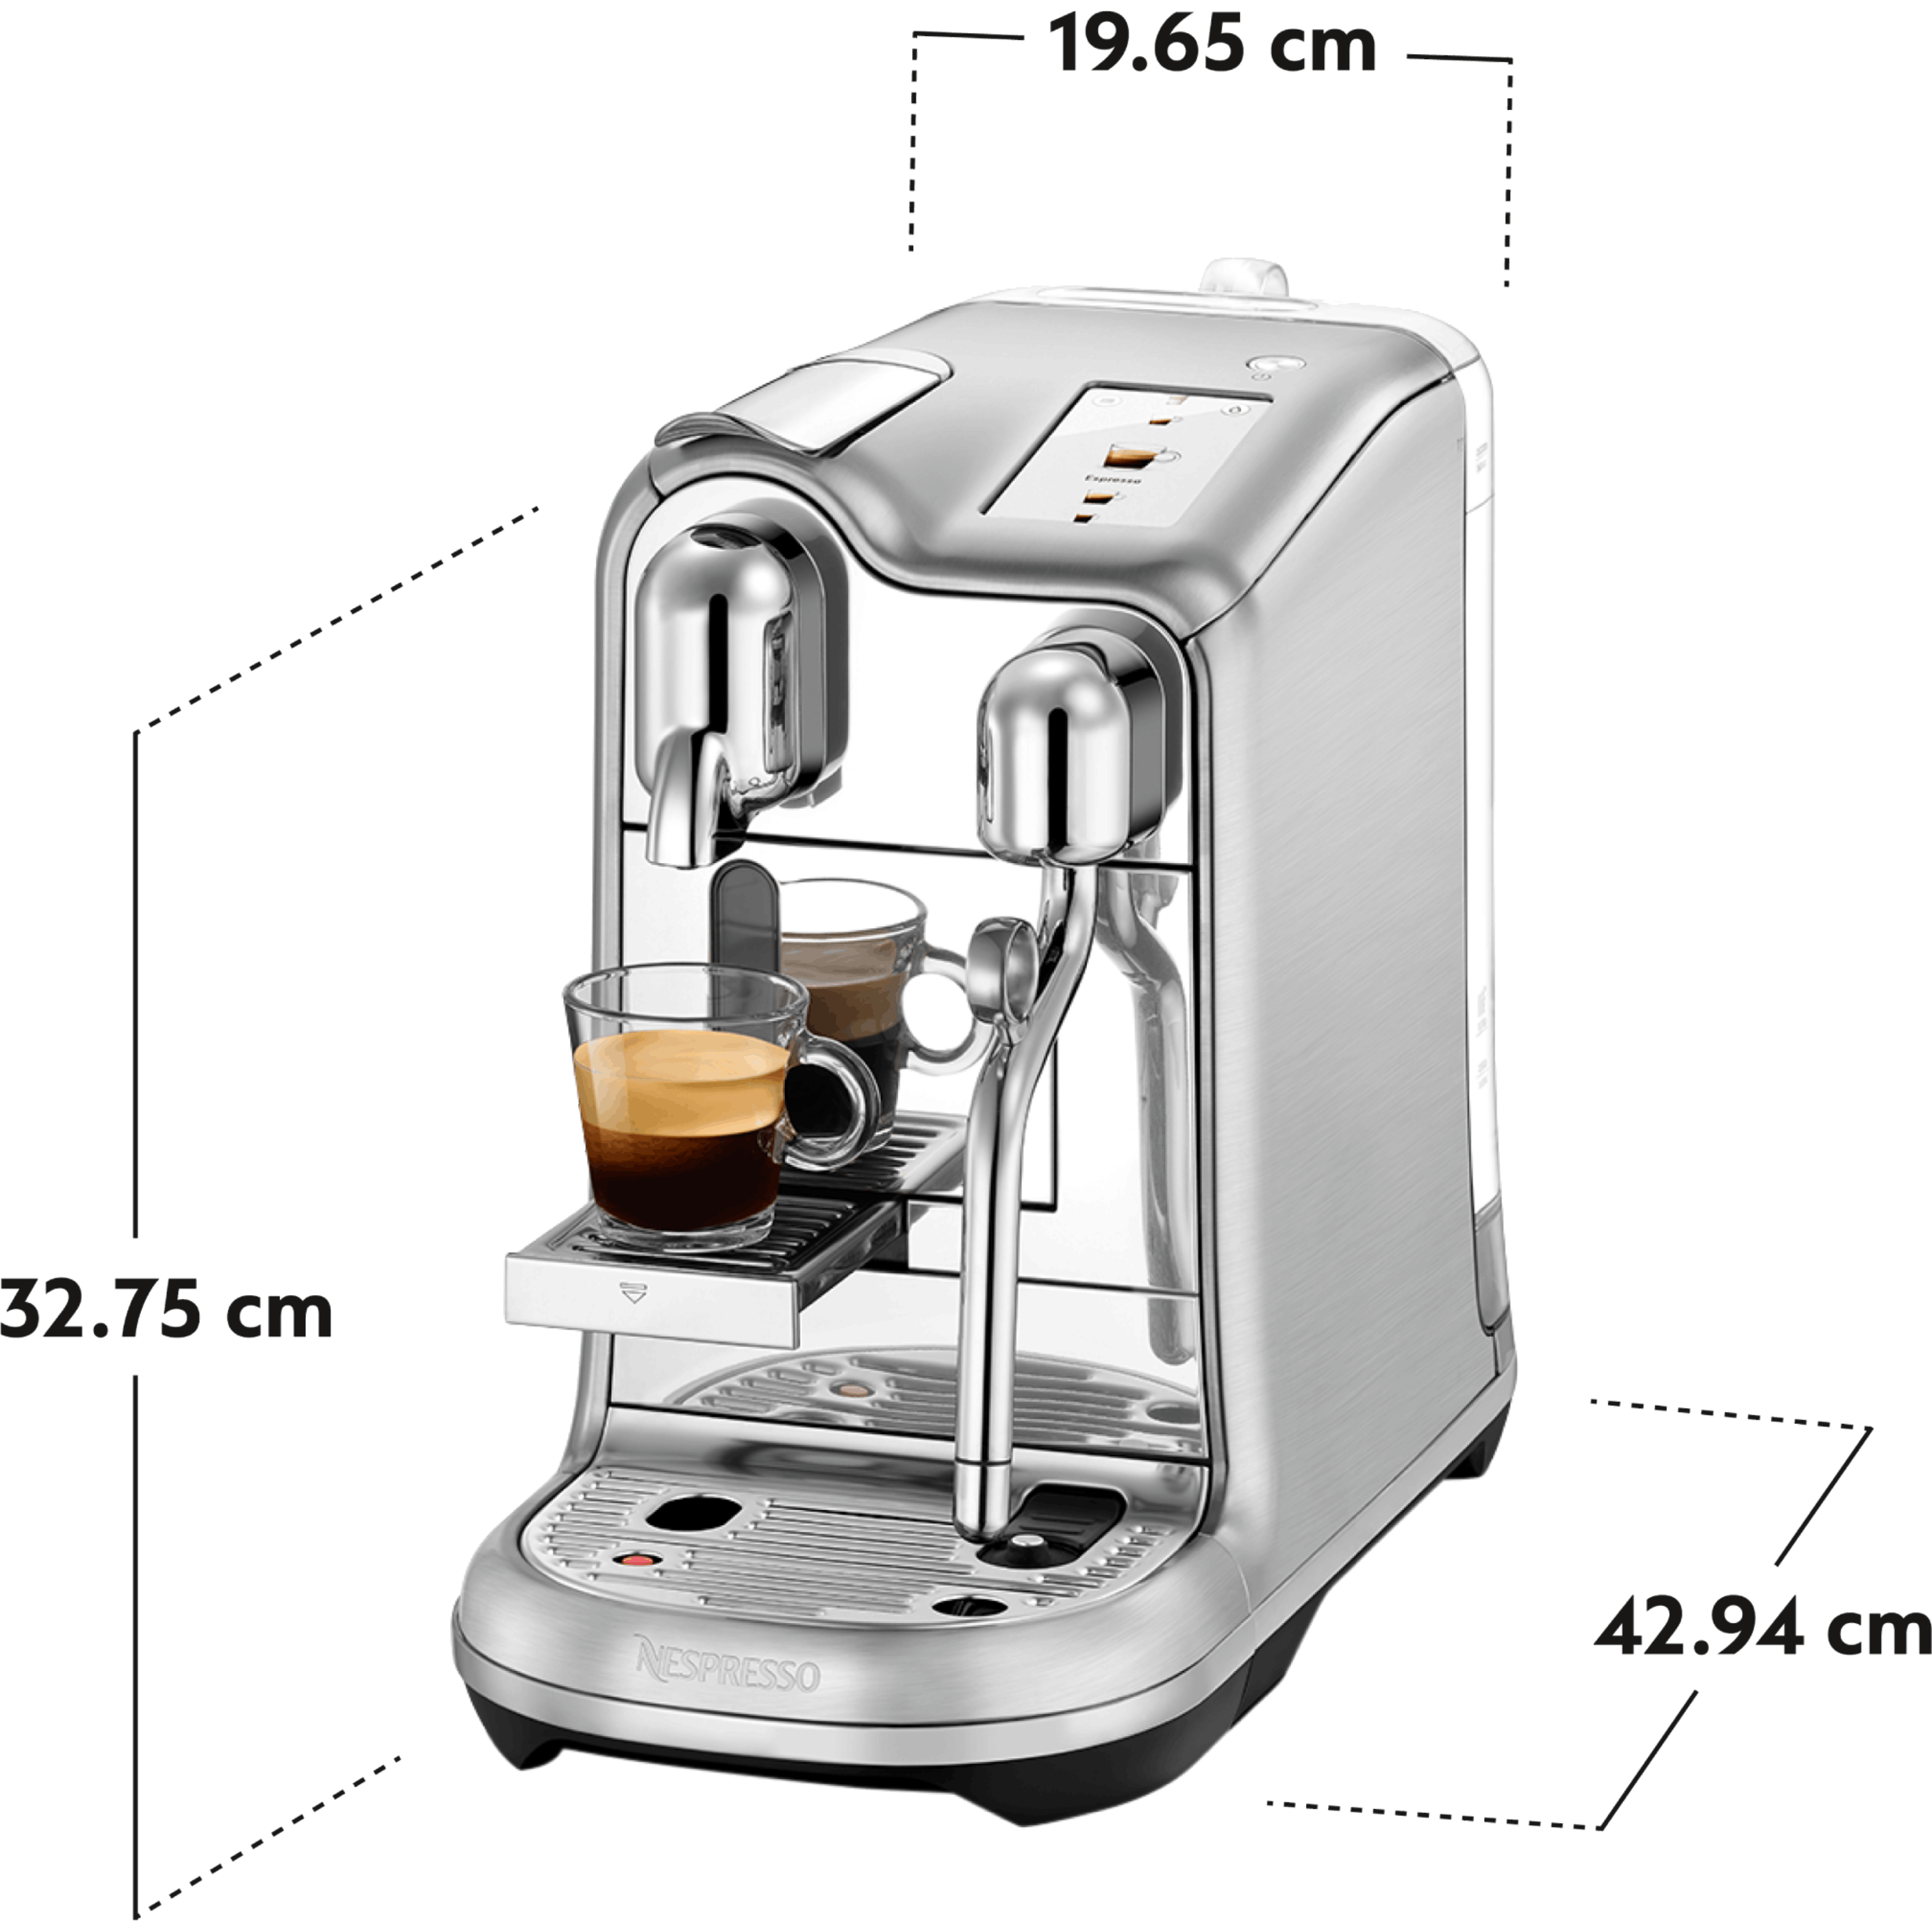 ماكينة قهوة נספרסו  קריאטיסטה פרו בلون פלדת אל חלד J620